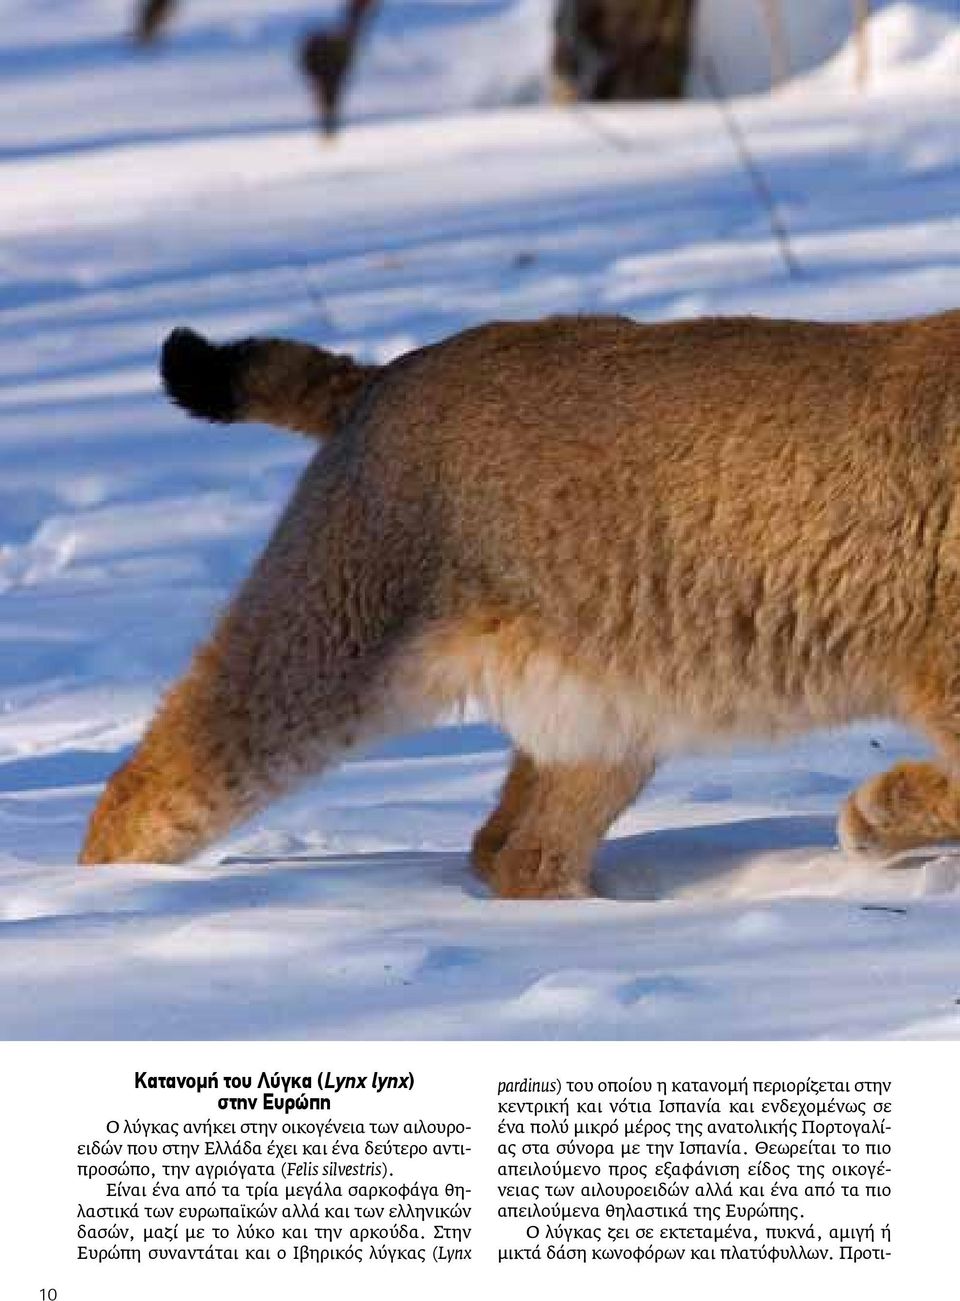 Στην Ευρώπη συναντάται και ο Ιβηρικός λύγκας (Lynx pardinus) του οποίου η κατανομή περιορίζεται στην κεντρική και νότια Ισπανία και ενδεχομένως σε ένα πολύ μικρό μέρος της ανατολικής